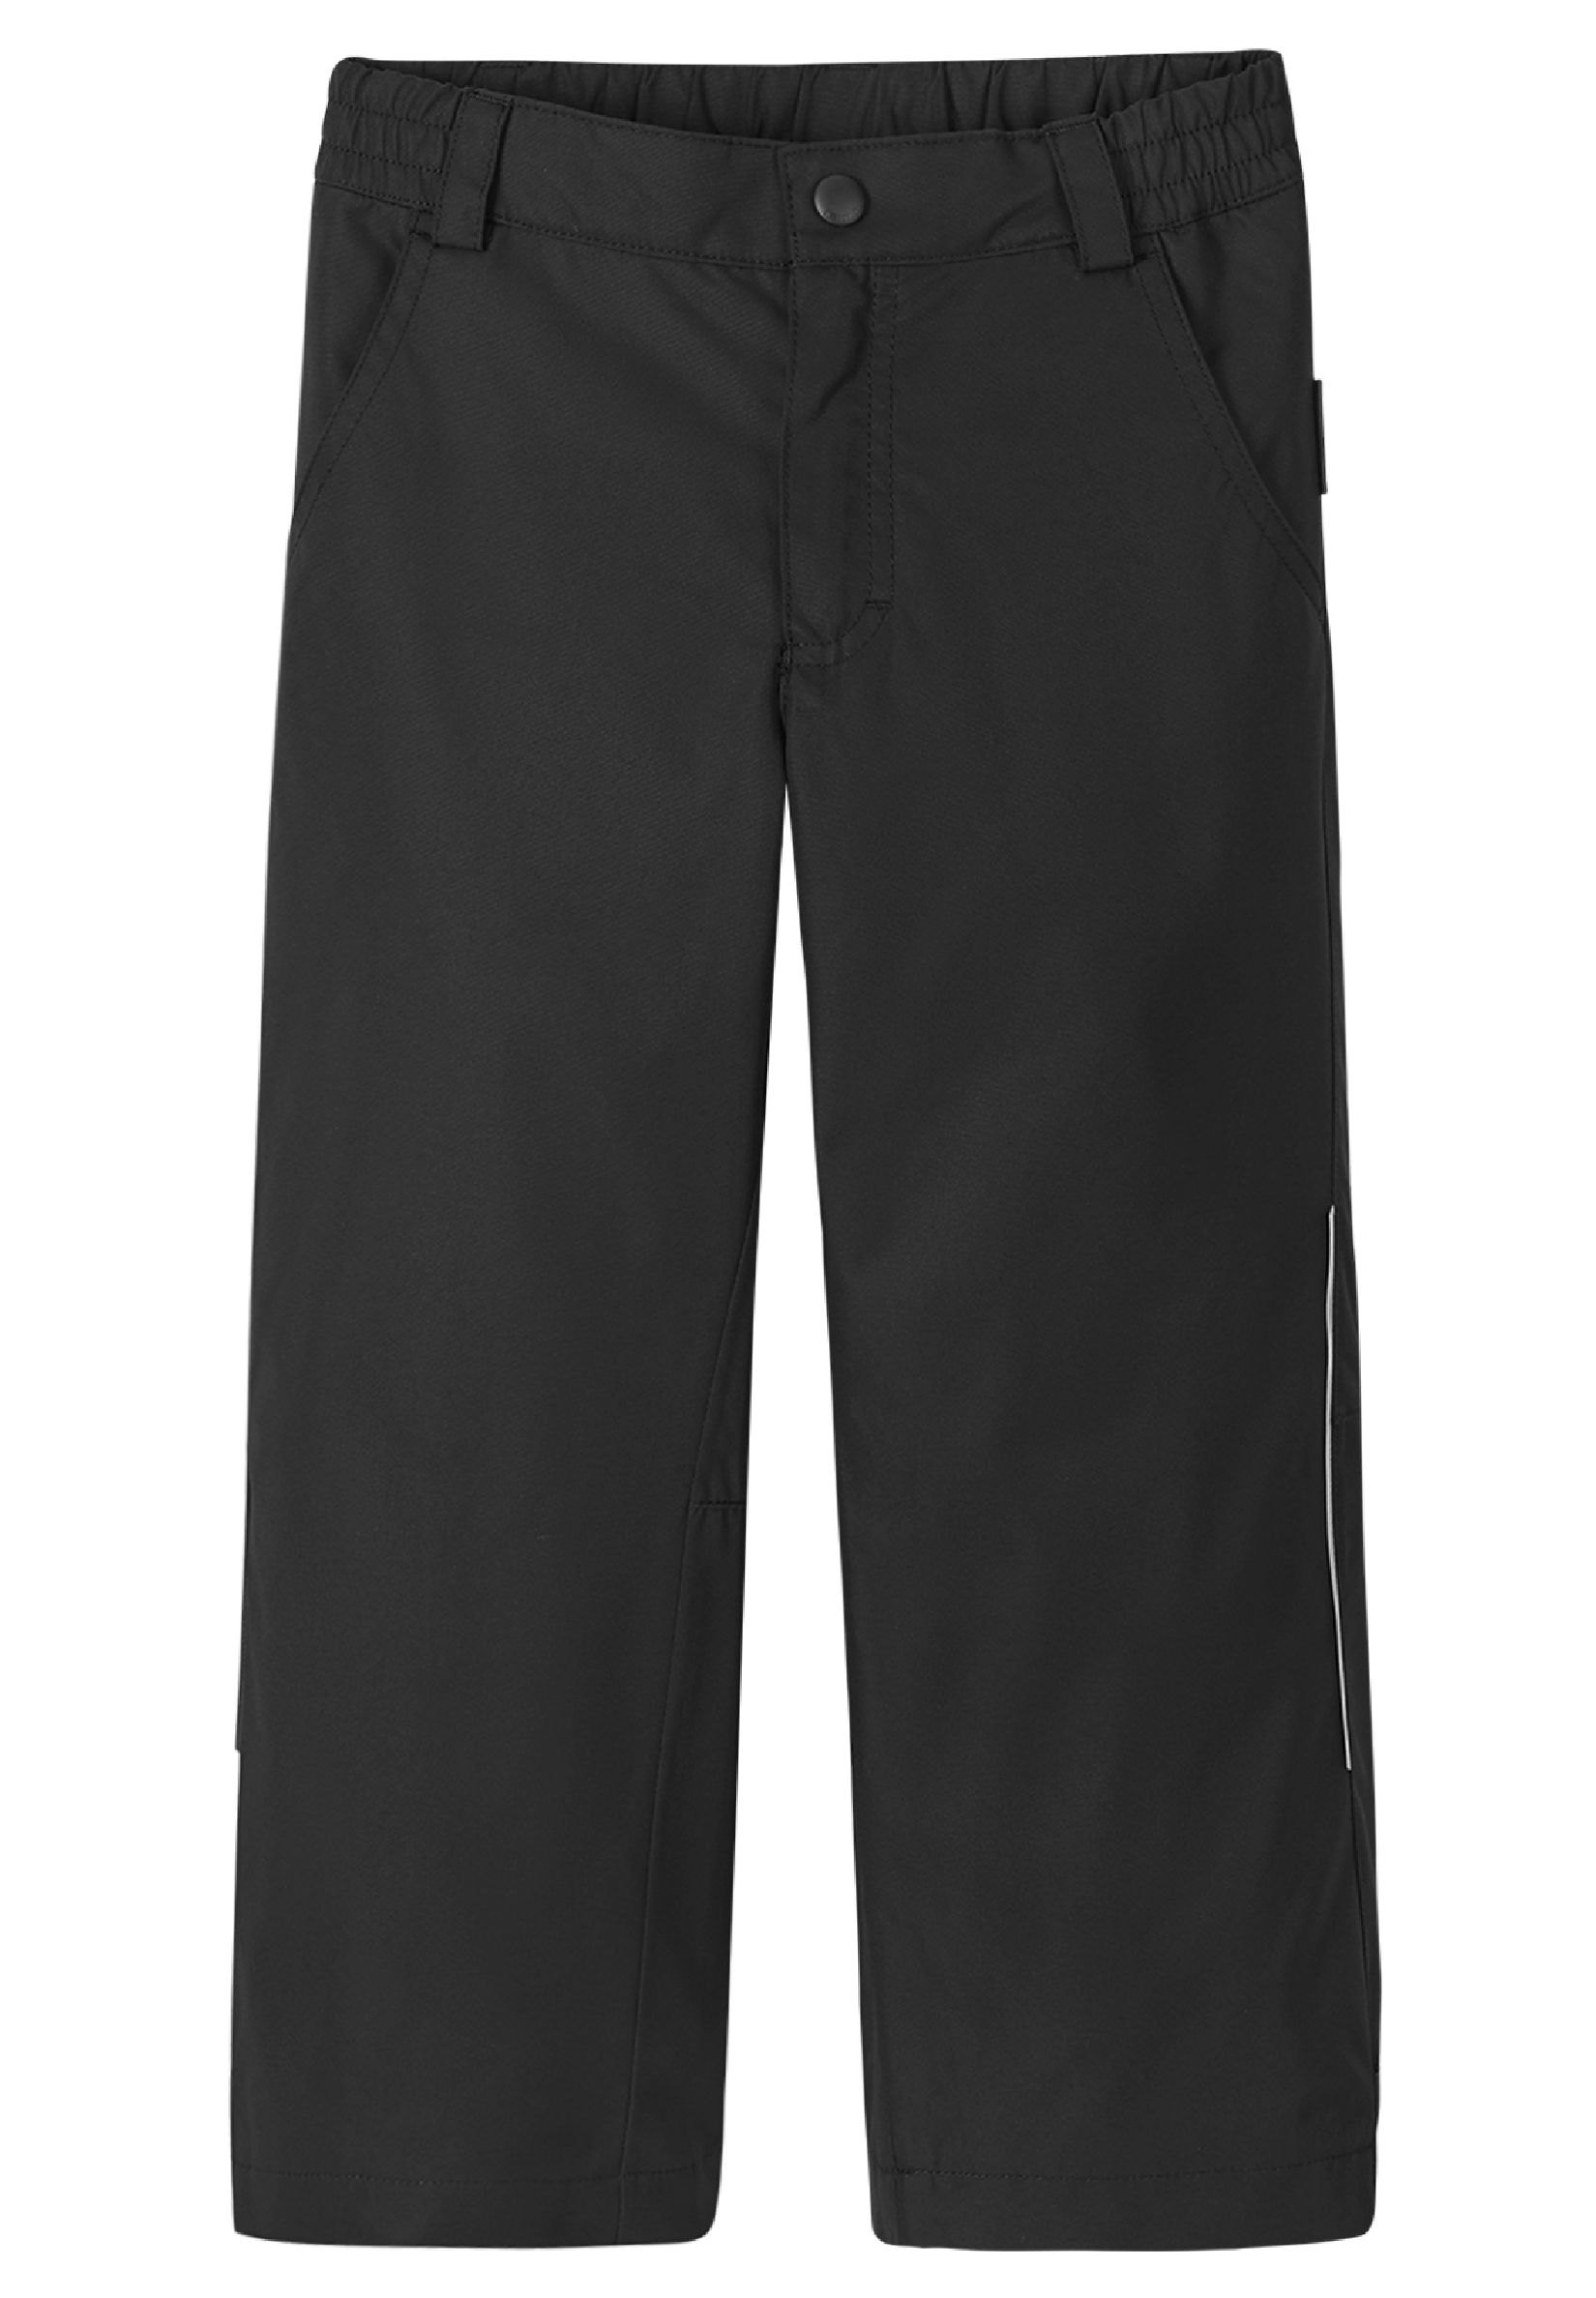 Спортивные шорты Reima Übergangshose Slana, черный брюки reima slana 522144 размер 116 0650 теплый серый